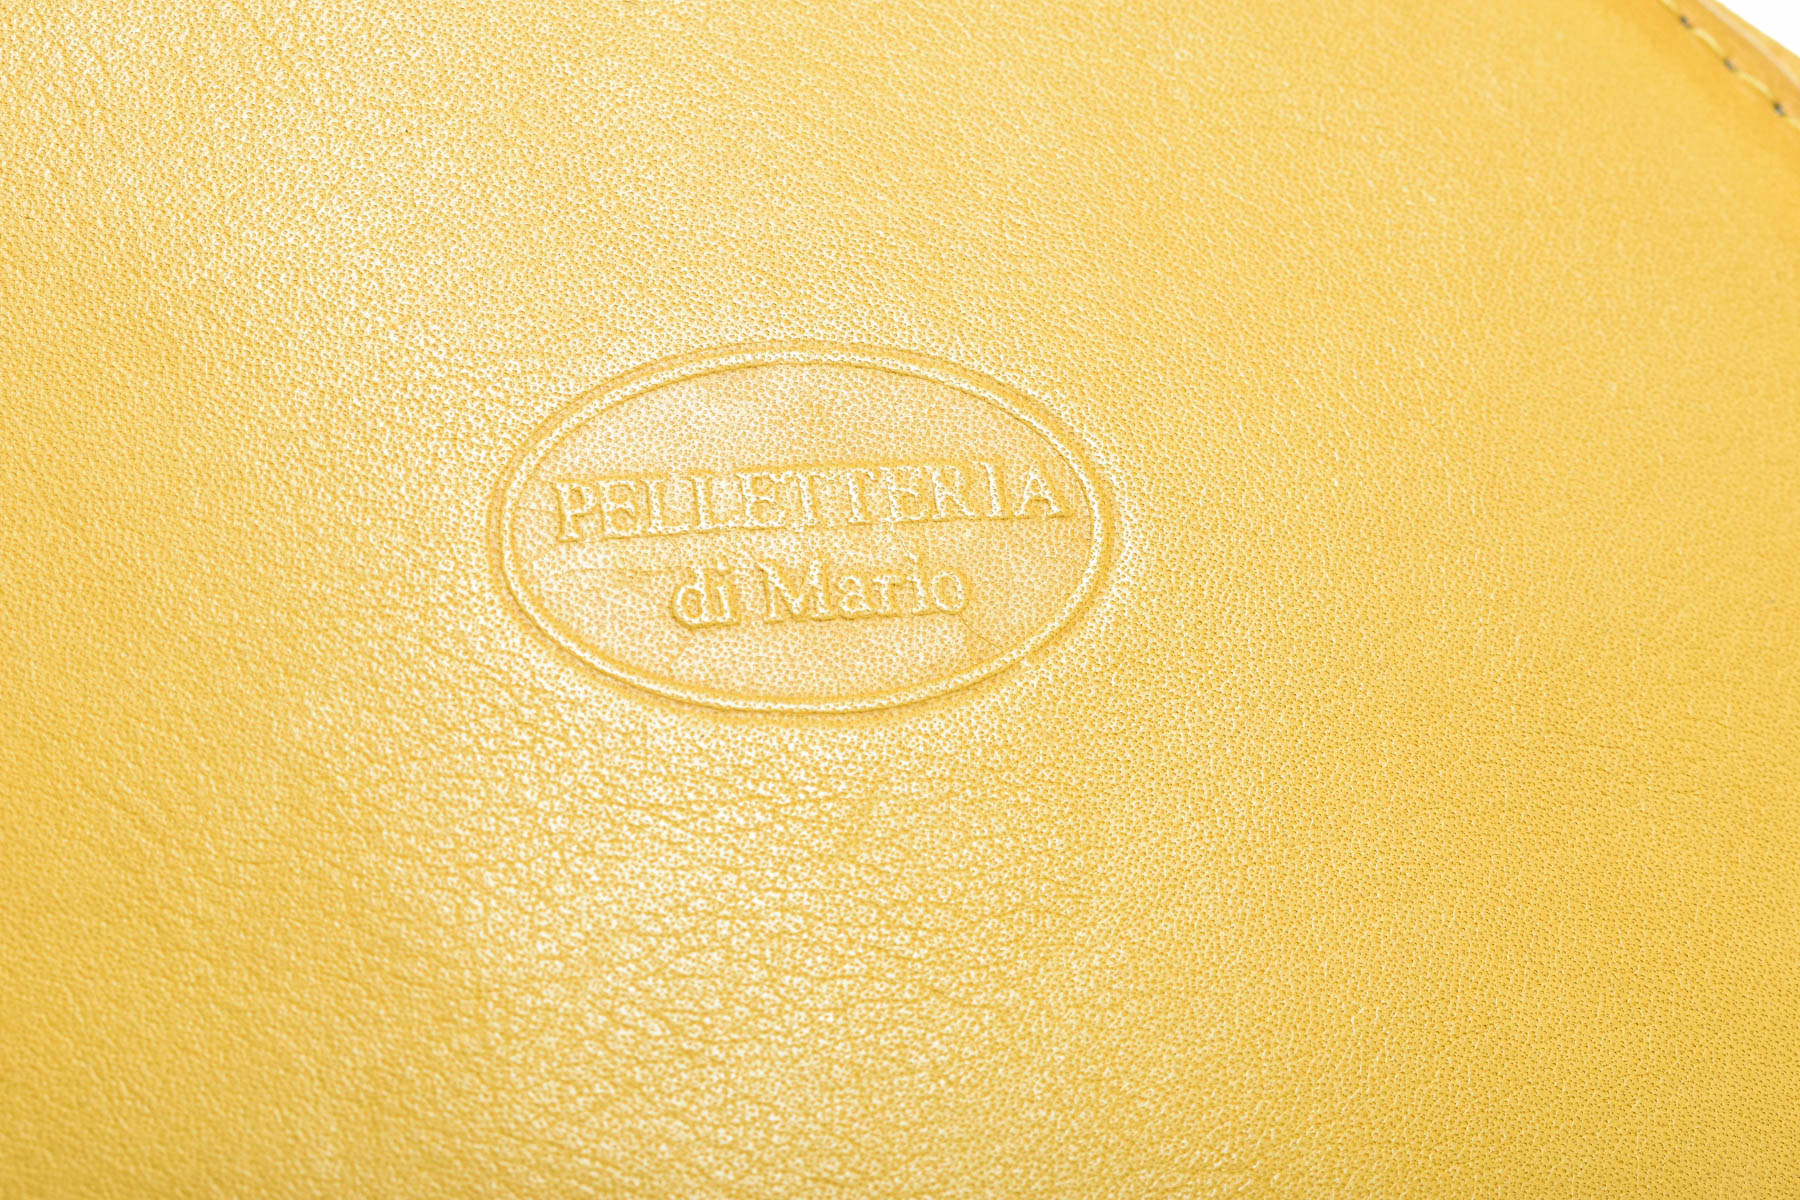 Γυναικεία τσάντα - Pelletteria di mario - 3